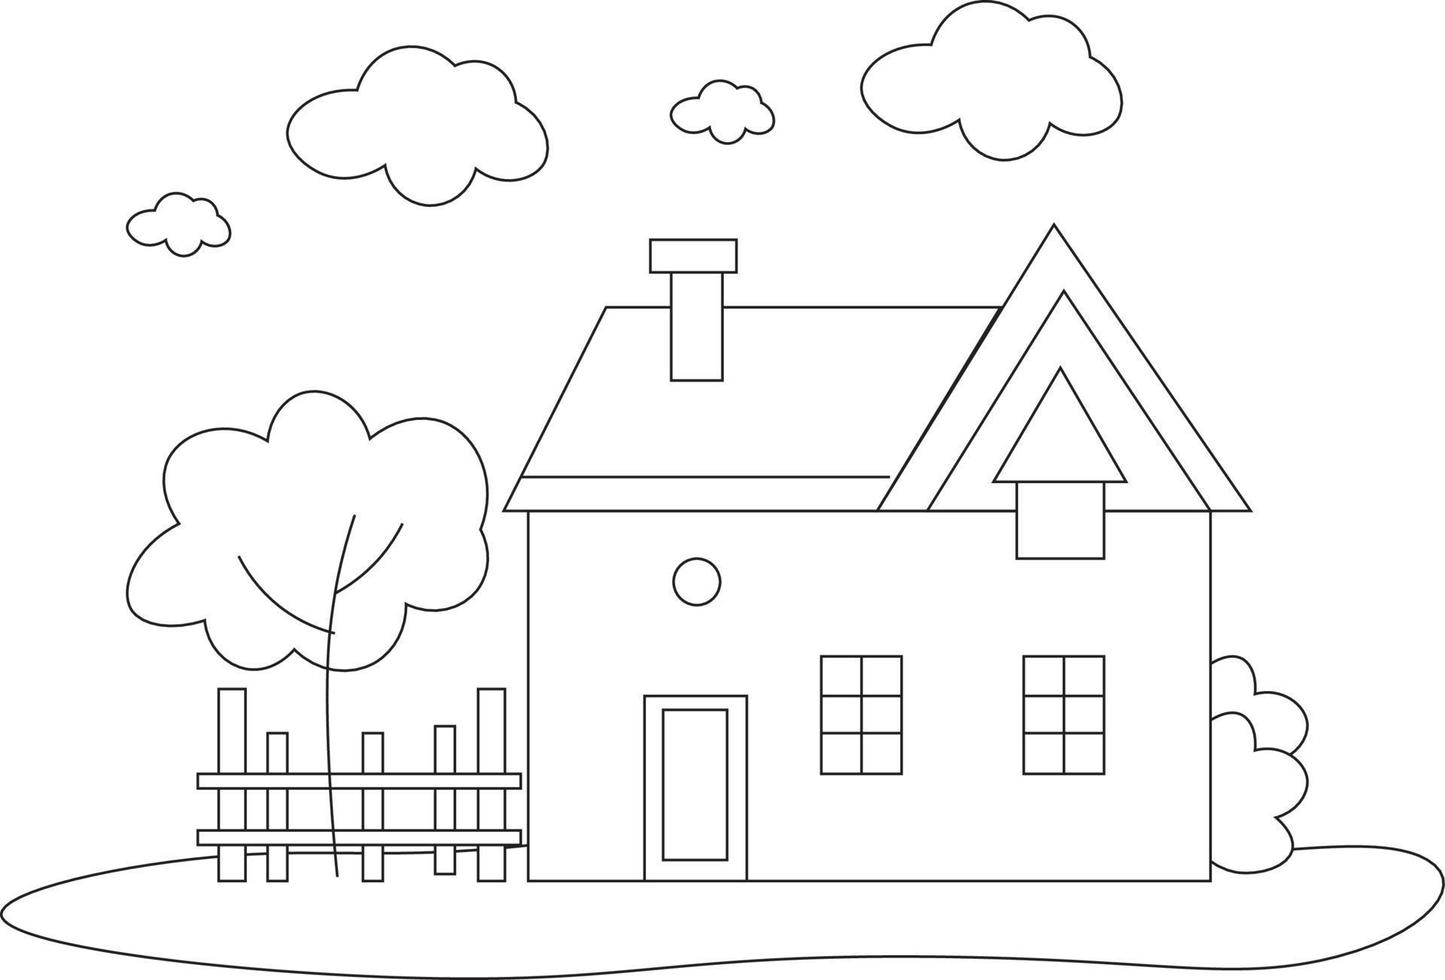 disegno della pagina da colorare della casa. disegno di pagina da colorare per bambini. semplice disegno della pagina da colorare. vettore